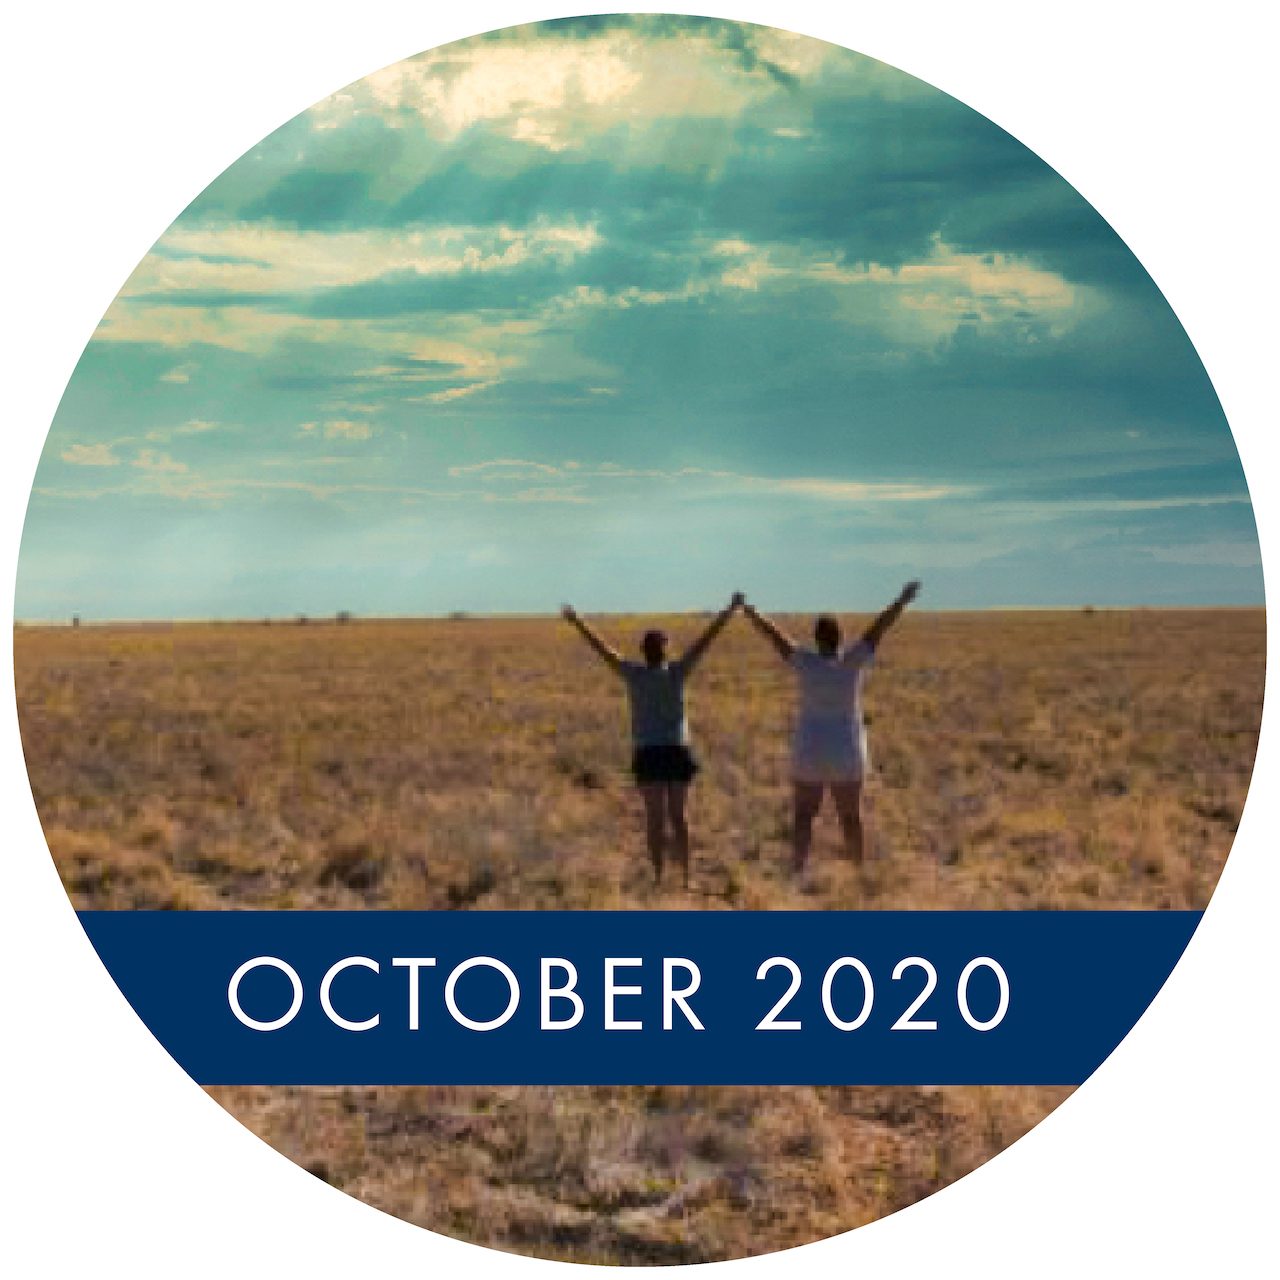 October 2020 Newsletter